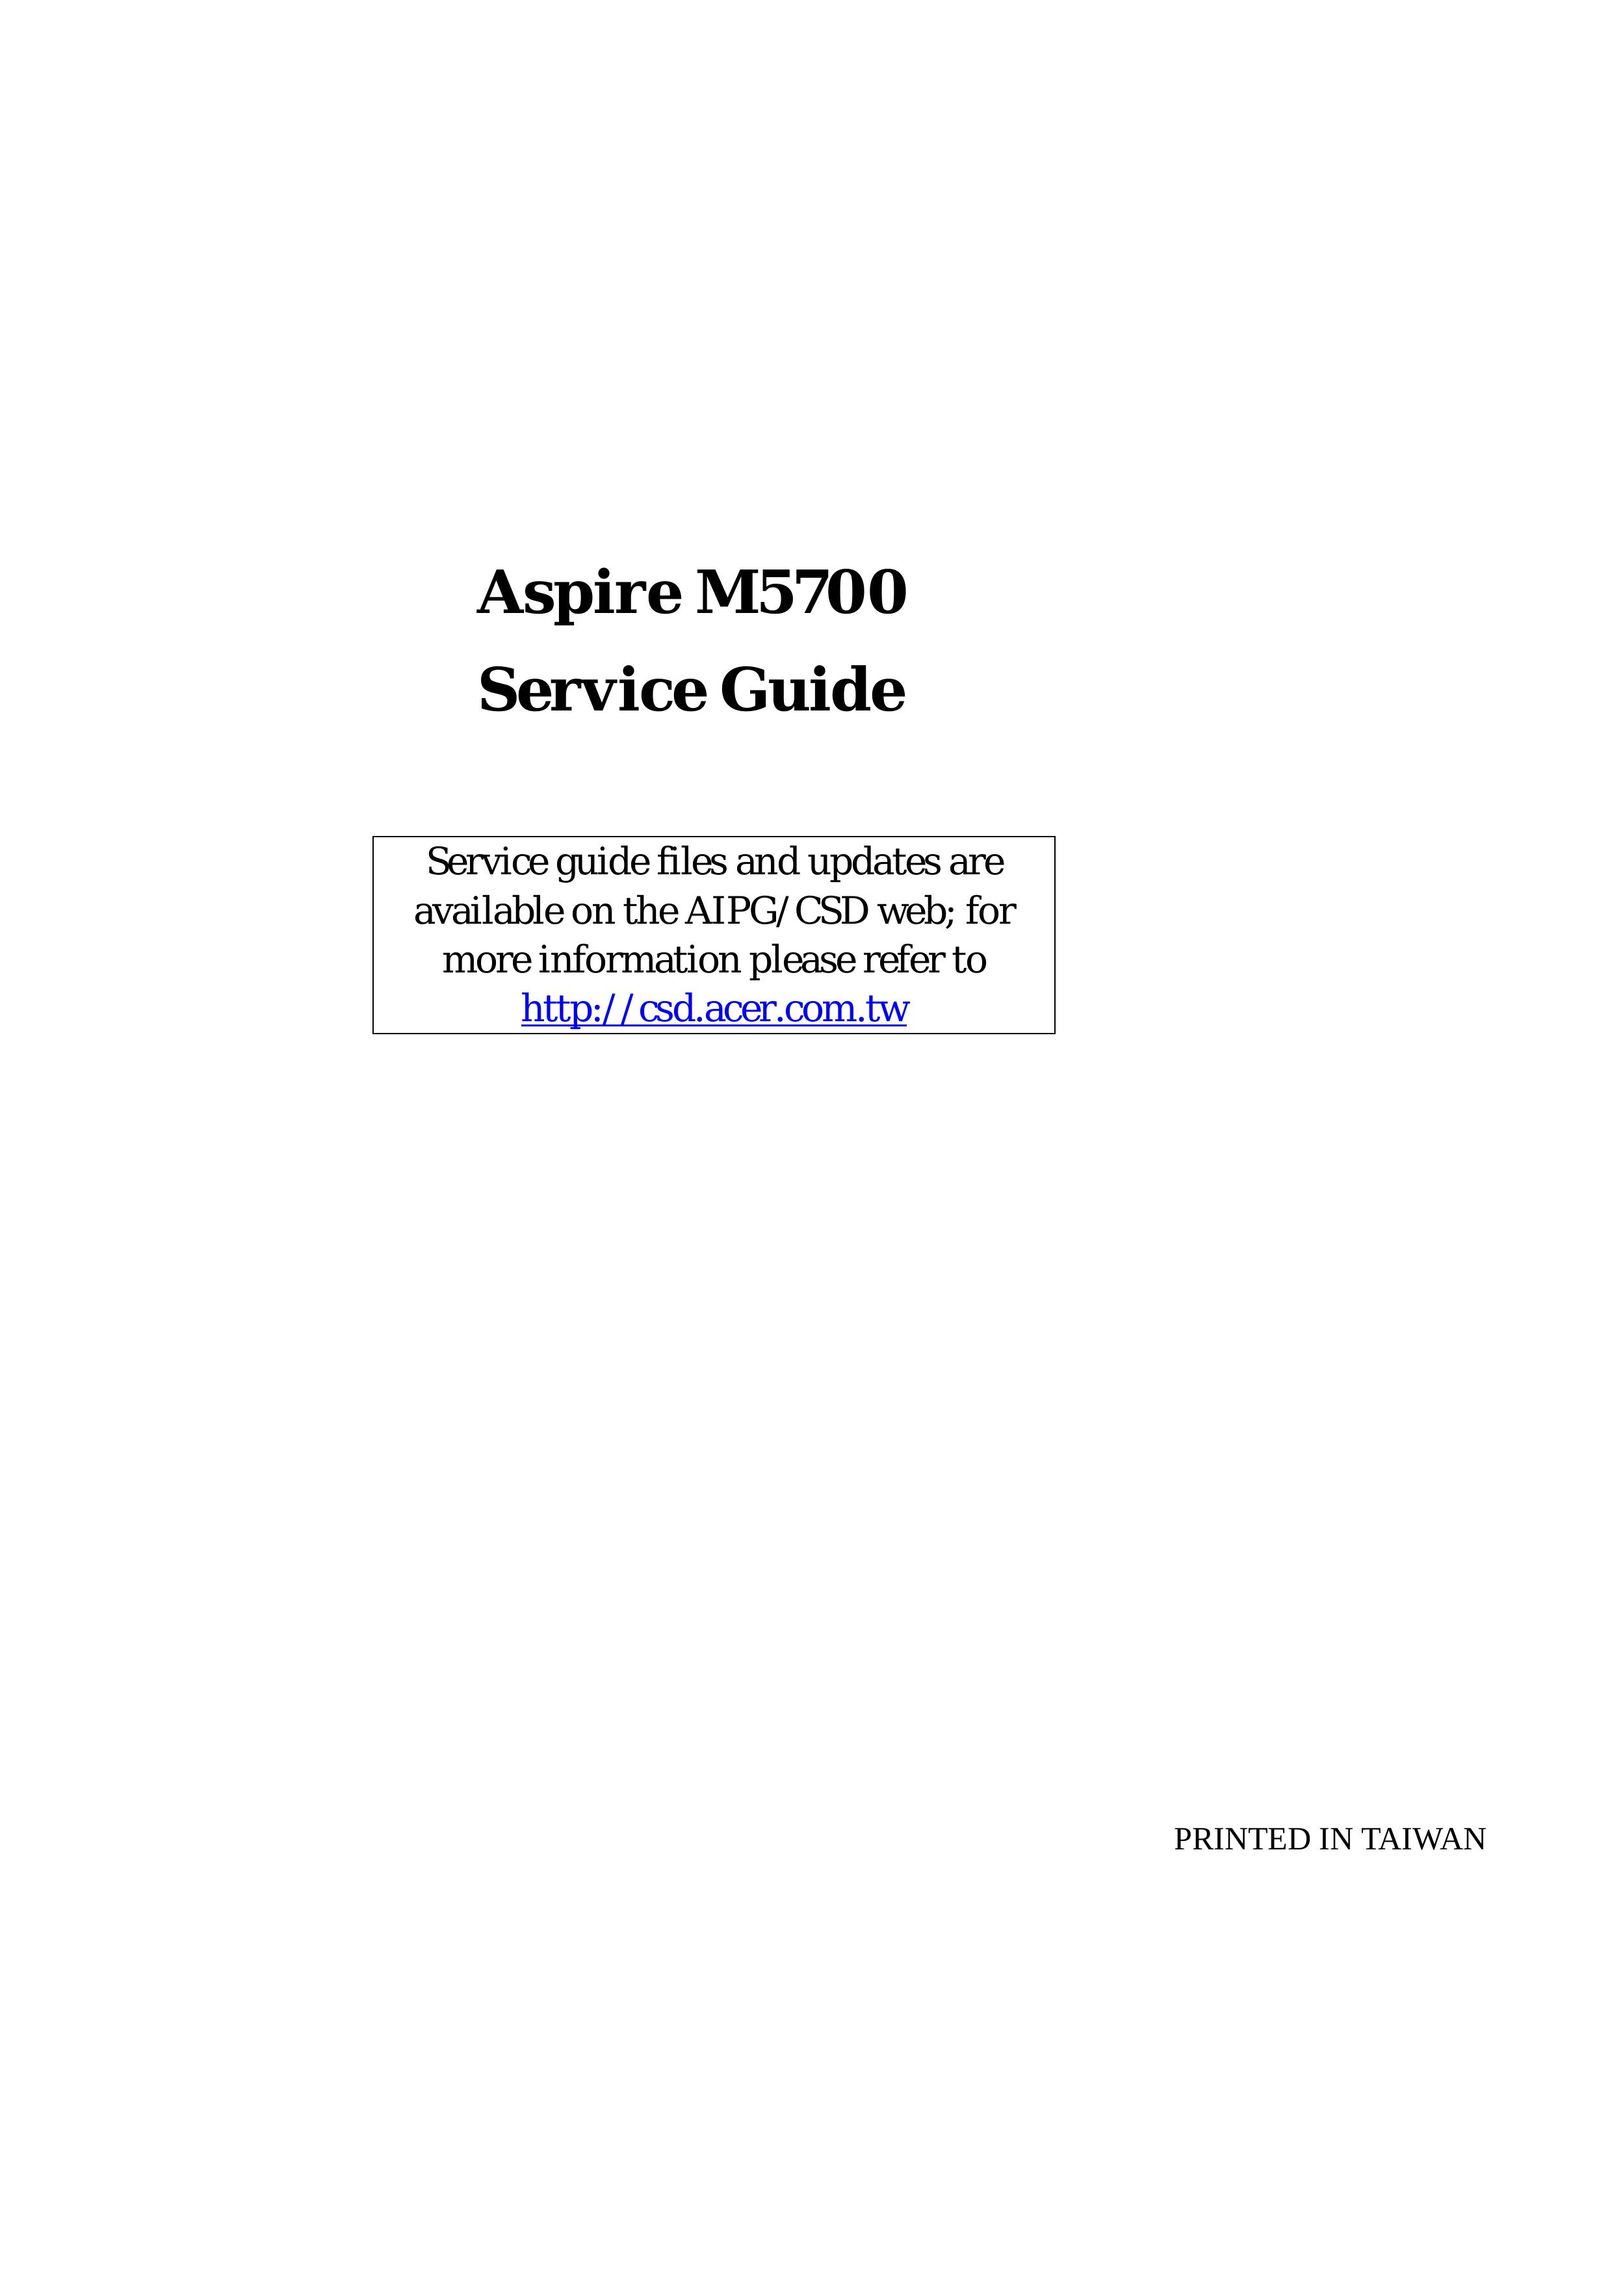 Aspire Digital M 5700 Personal Computer User Manual